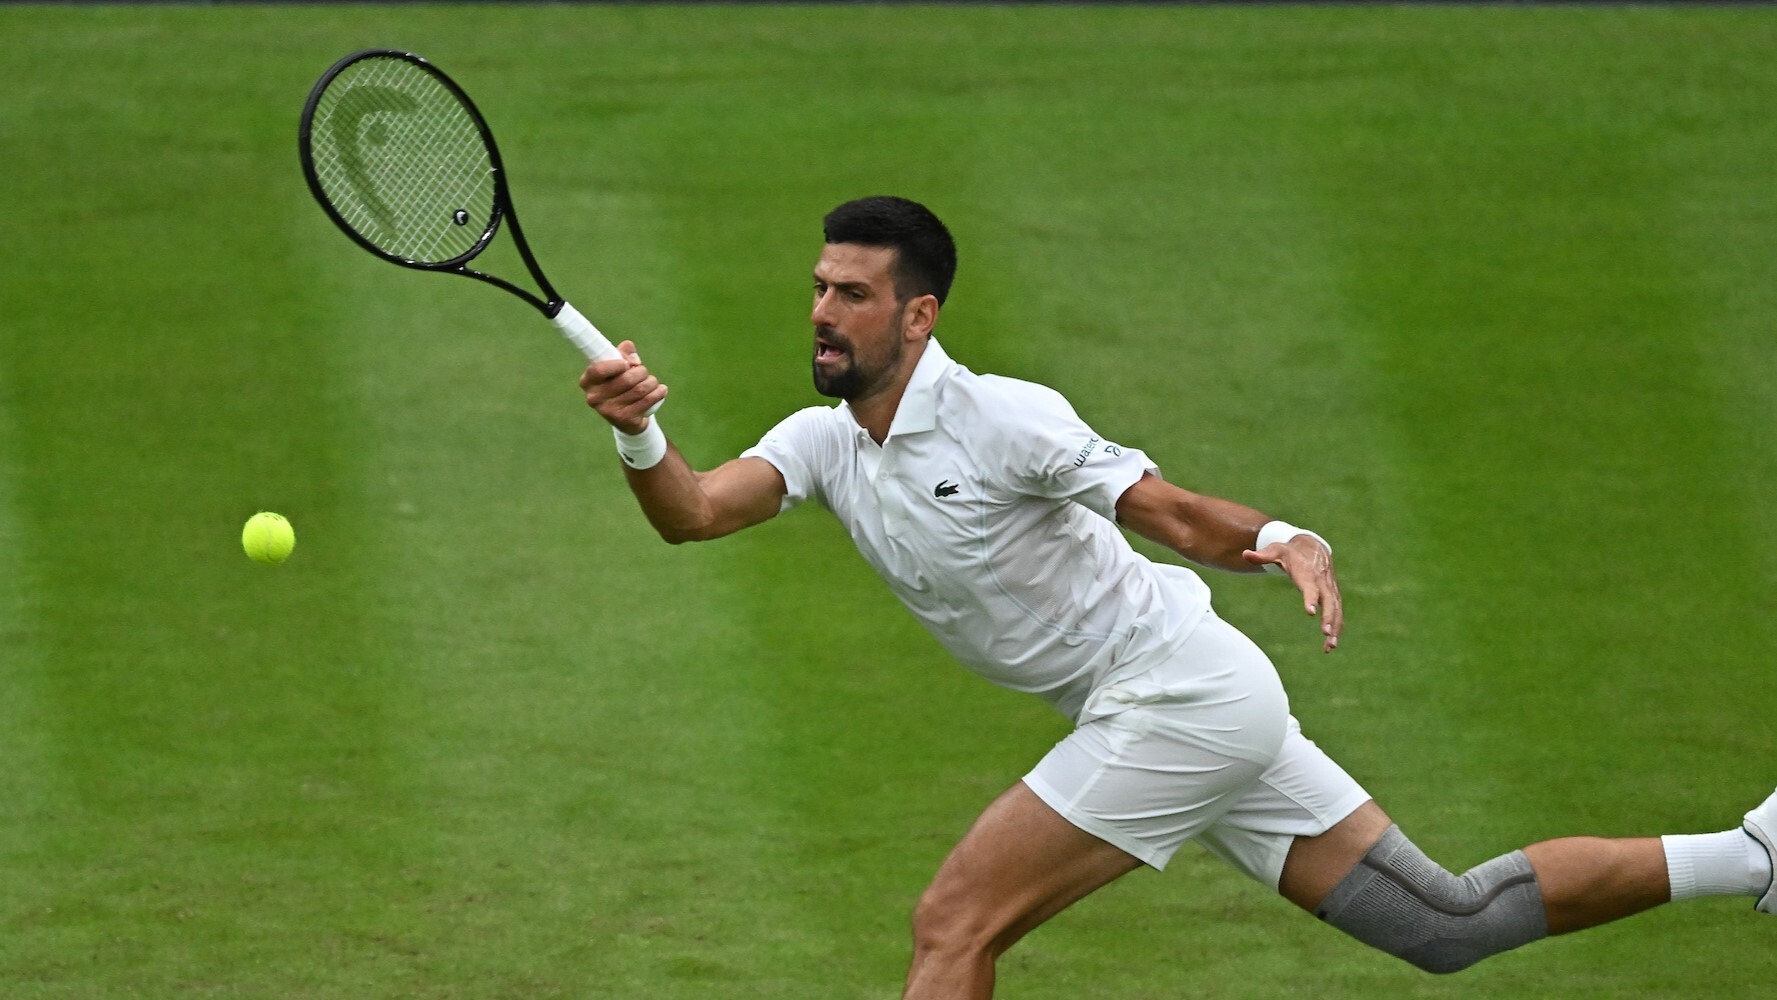 Djokovic Defeats Rune to Reach Wimbledon Quarterfinals